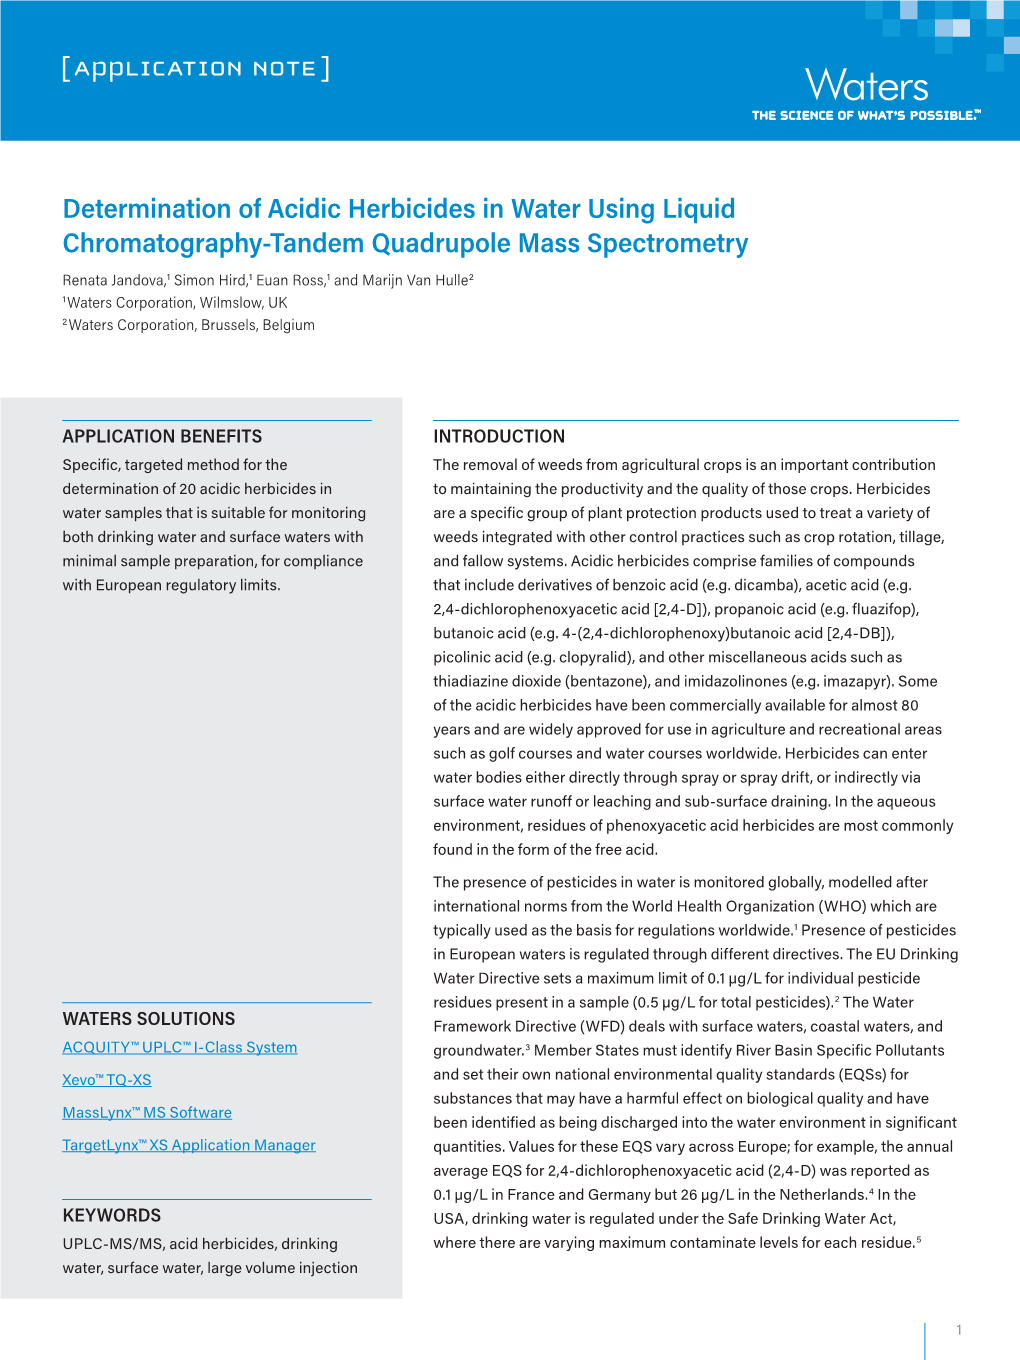 Determination of Acidic Herbicides in Water Using Liquid